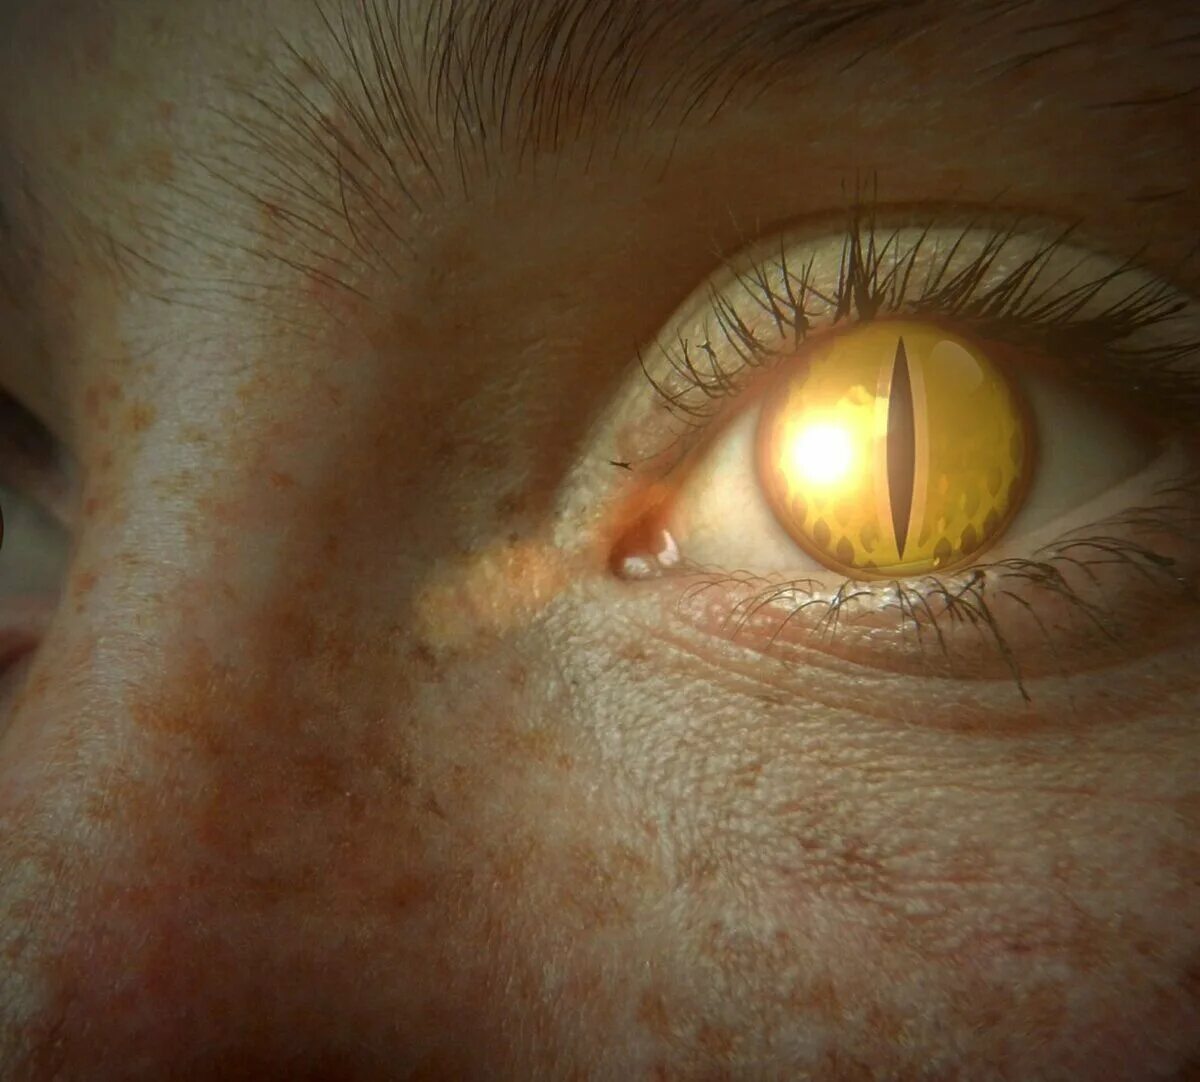 Желтый глаз 12. Желтые глаза. Глаз человека. Желто янтарные глаза. Желтые глаза с вертикальным зрачком.